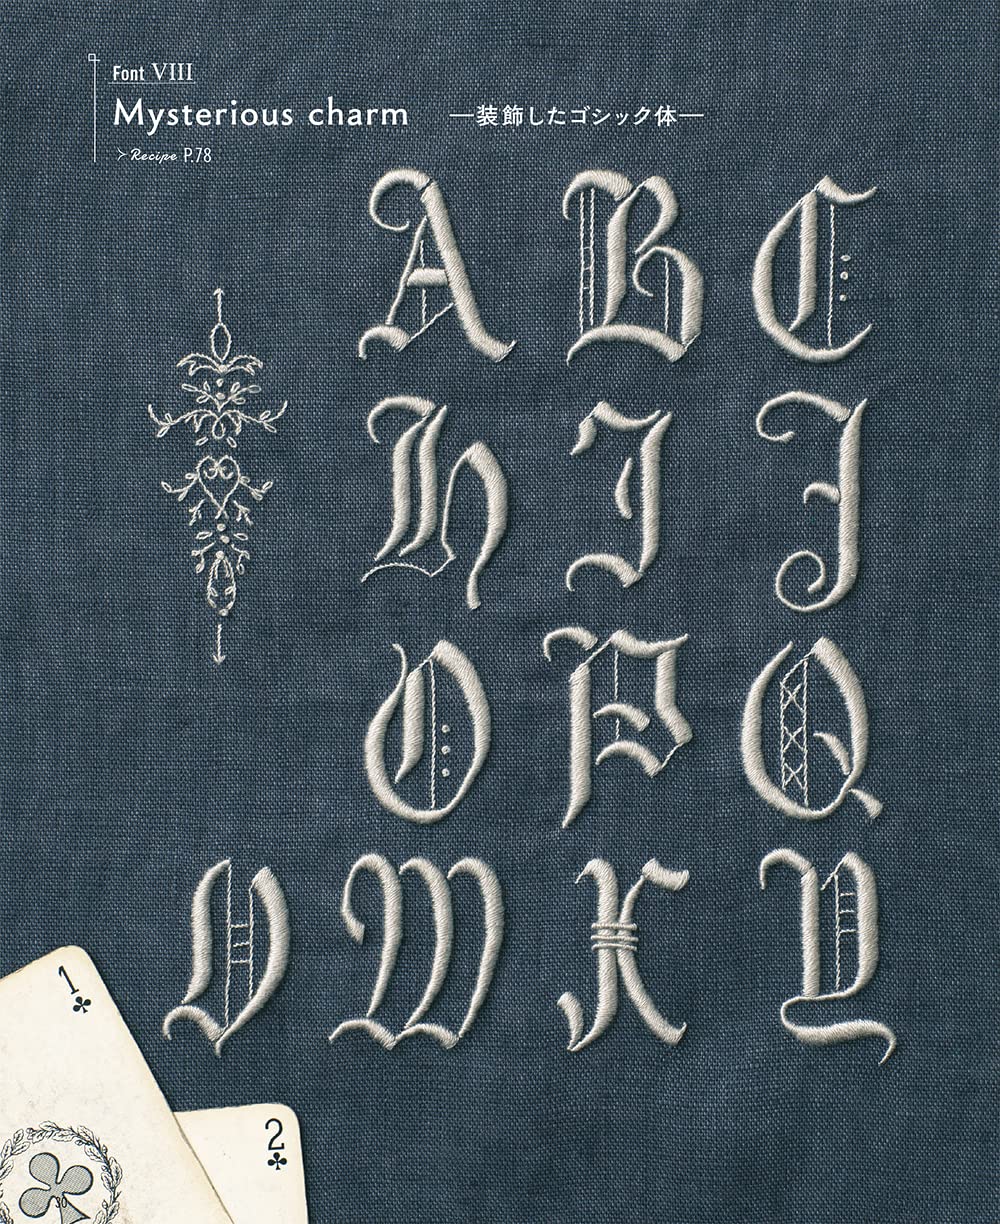 アルファベットの刺繍図案帖